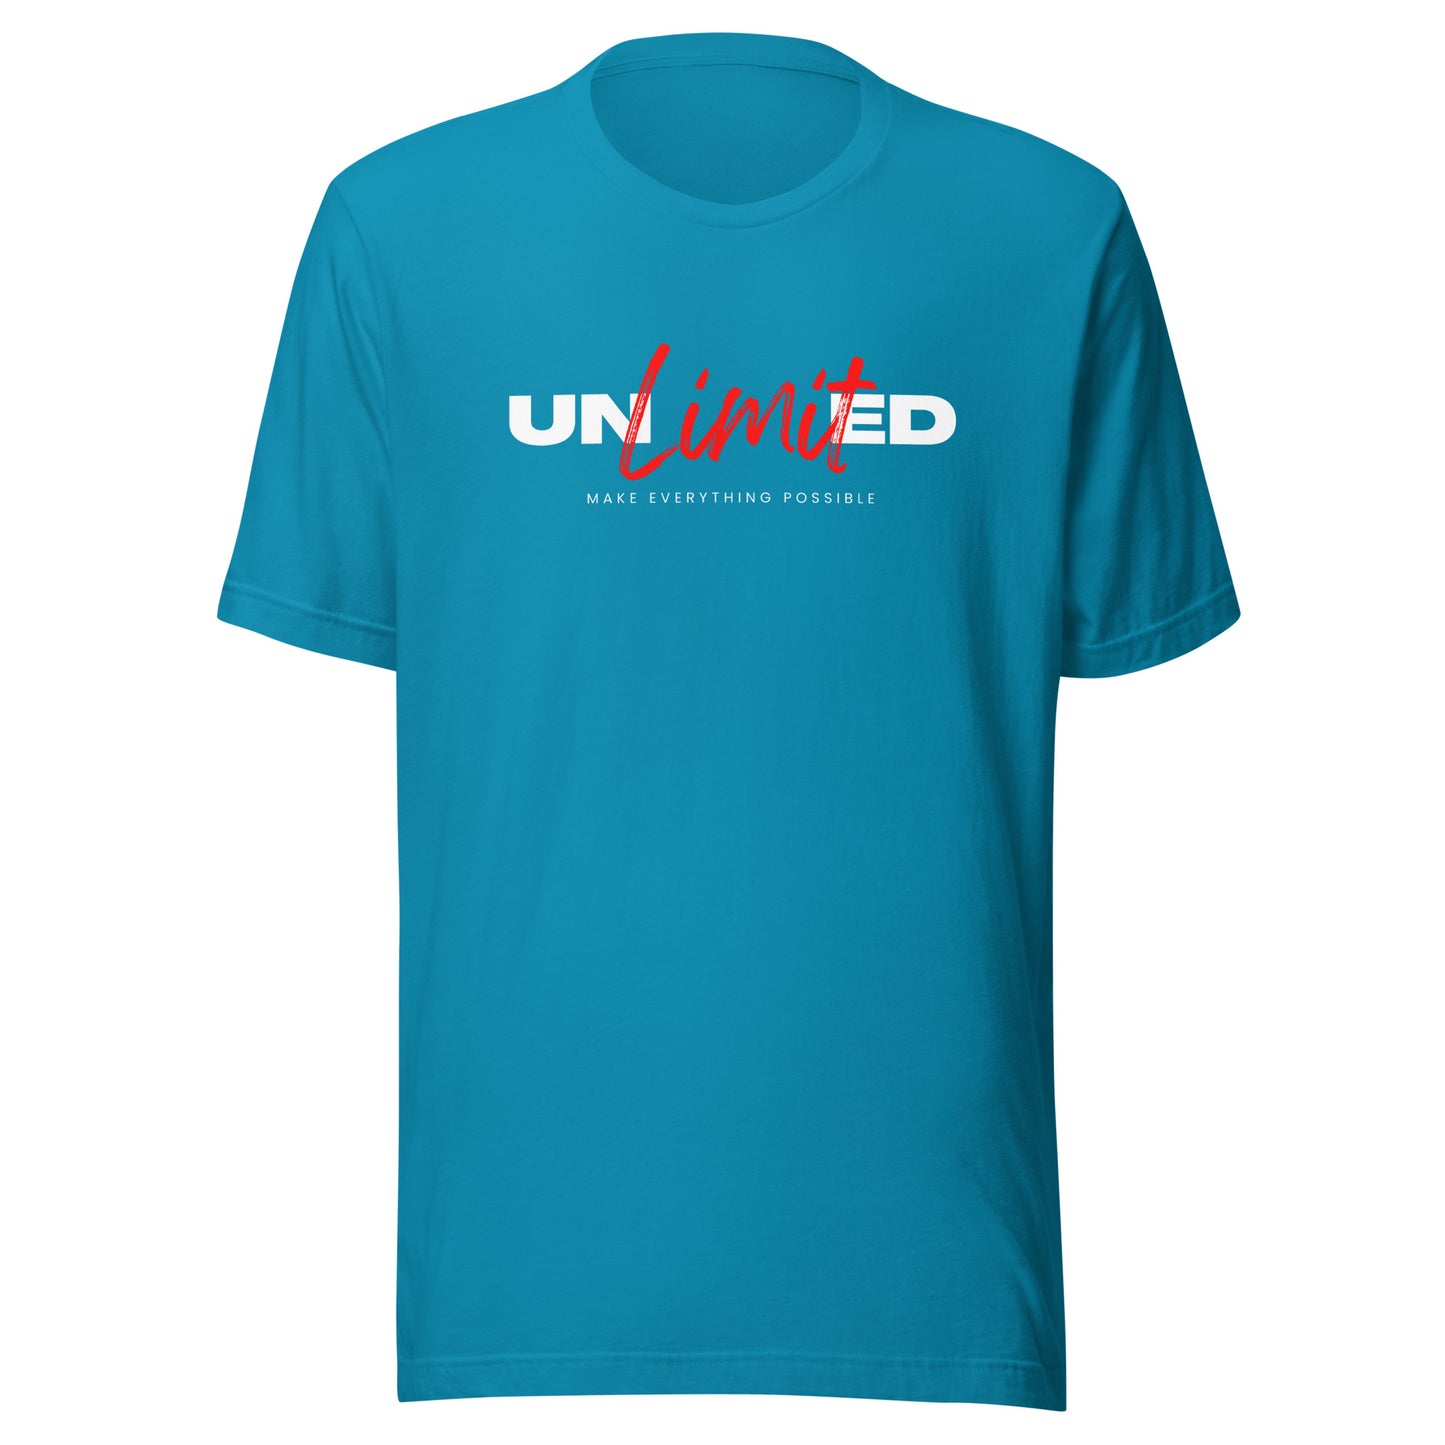 "Unlimited" Unisex T-Shirt